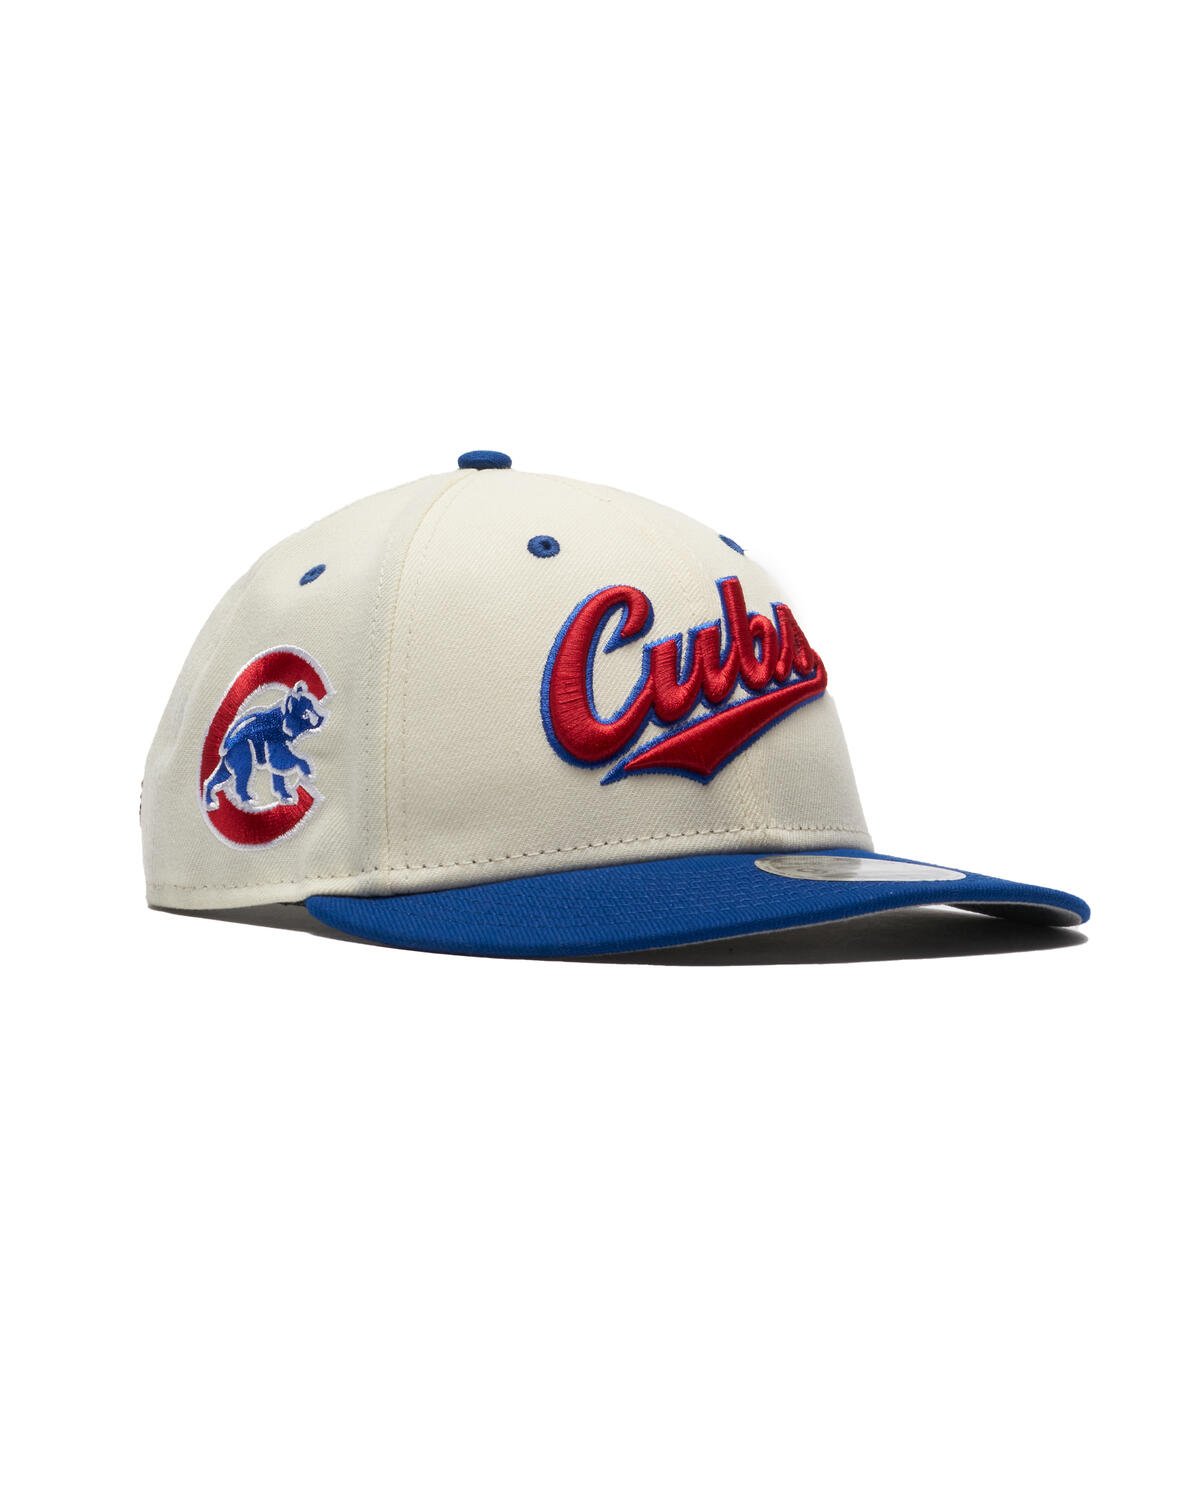 New Era x FELT 9FIFTY Cap 'Chicago Cubs', 60505616